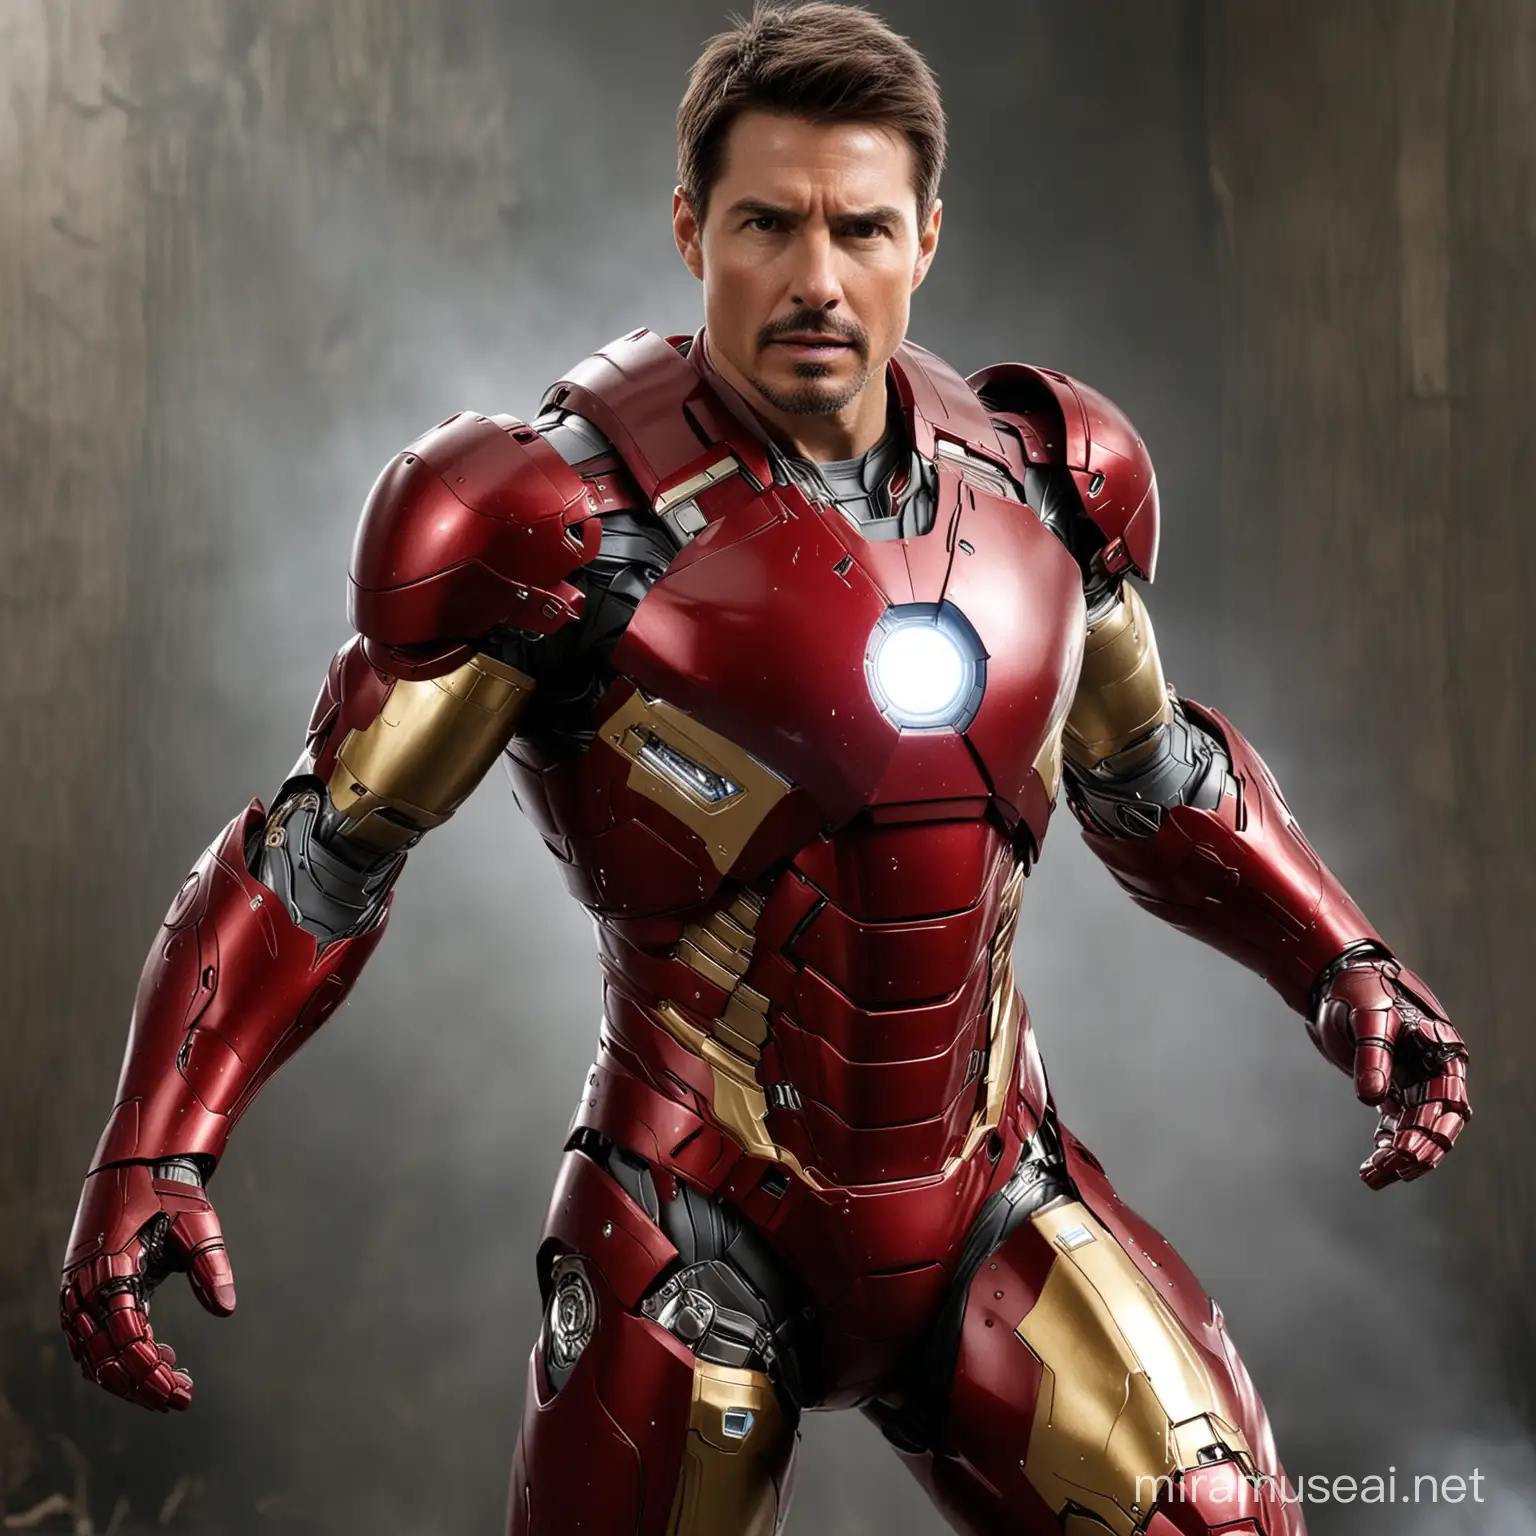 Tom Cruise Portrays Iconic Superhero Iron Man